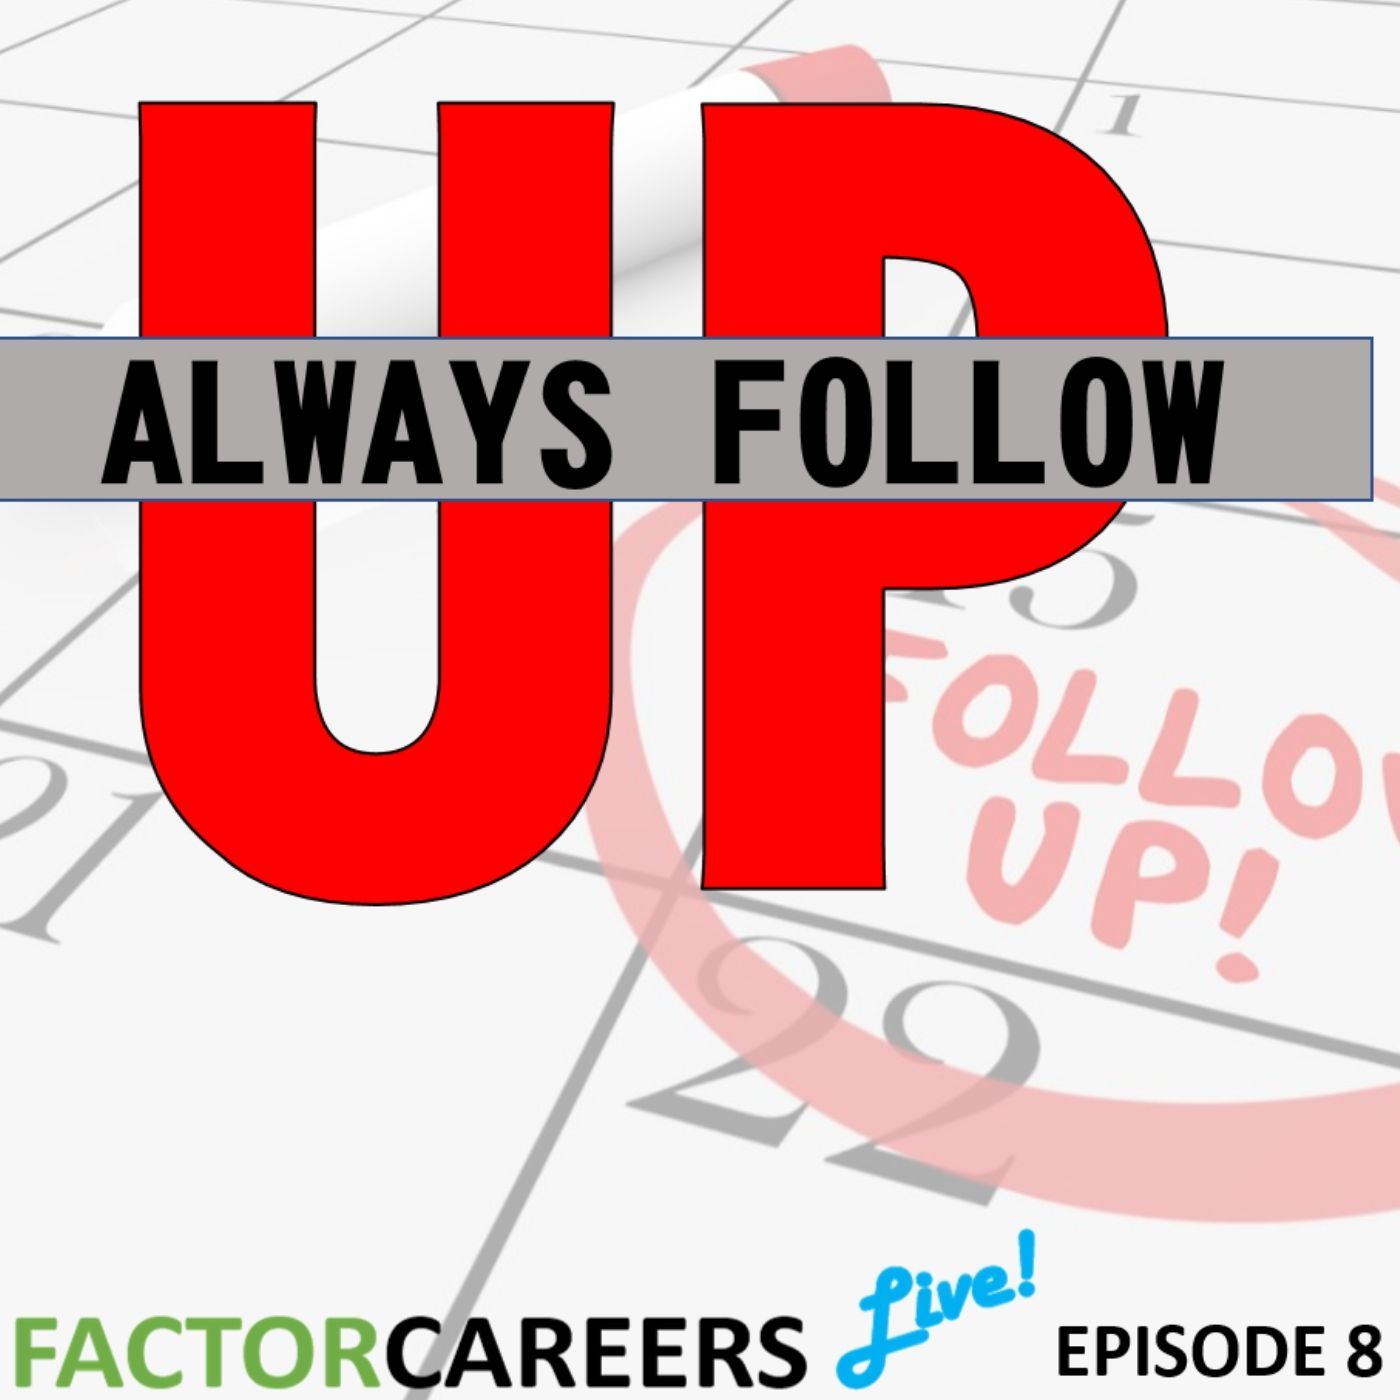 Episode 8 - Always Follow Up! - Factorcareers Live!